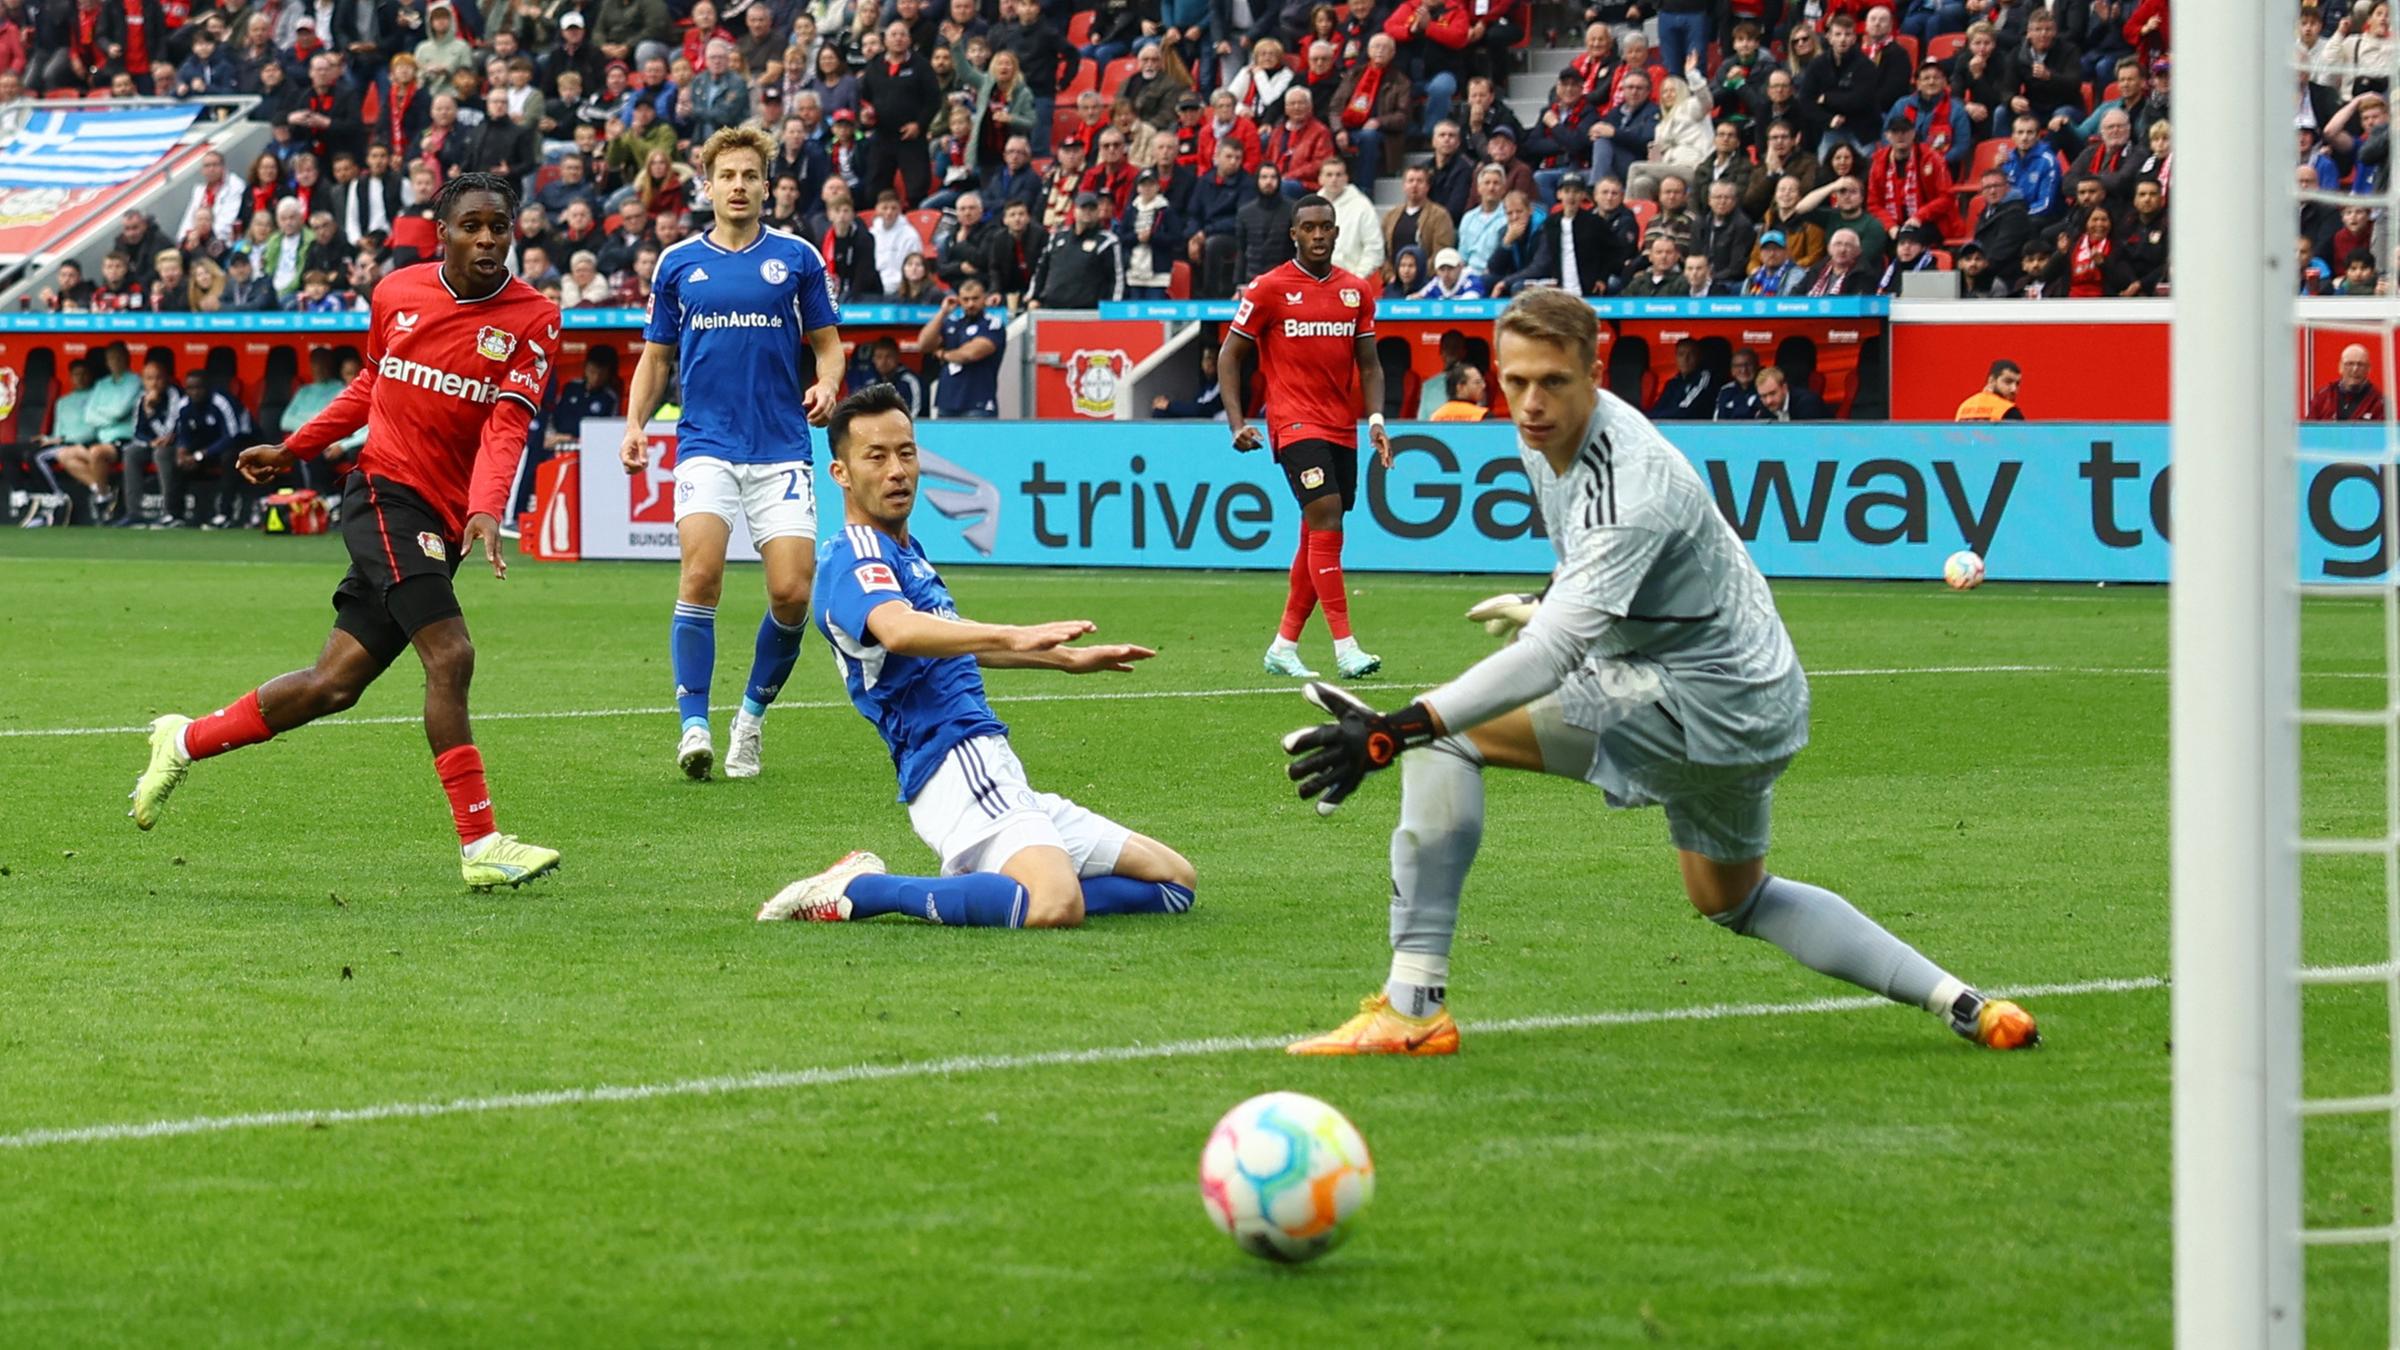 Jeremie Frimpong trifft zum 3:0 gegen Schalke